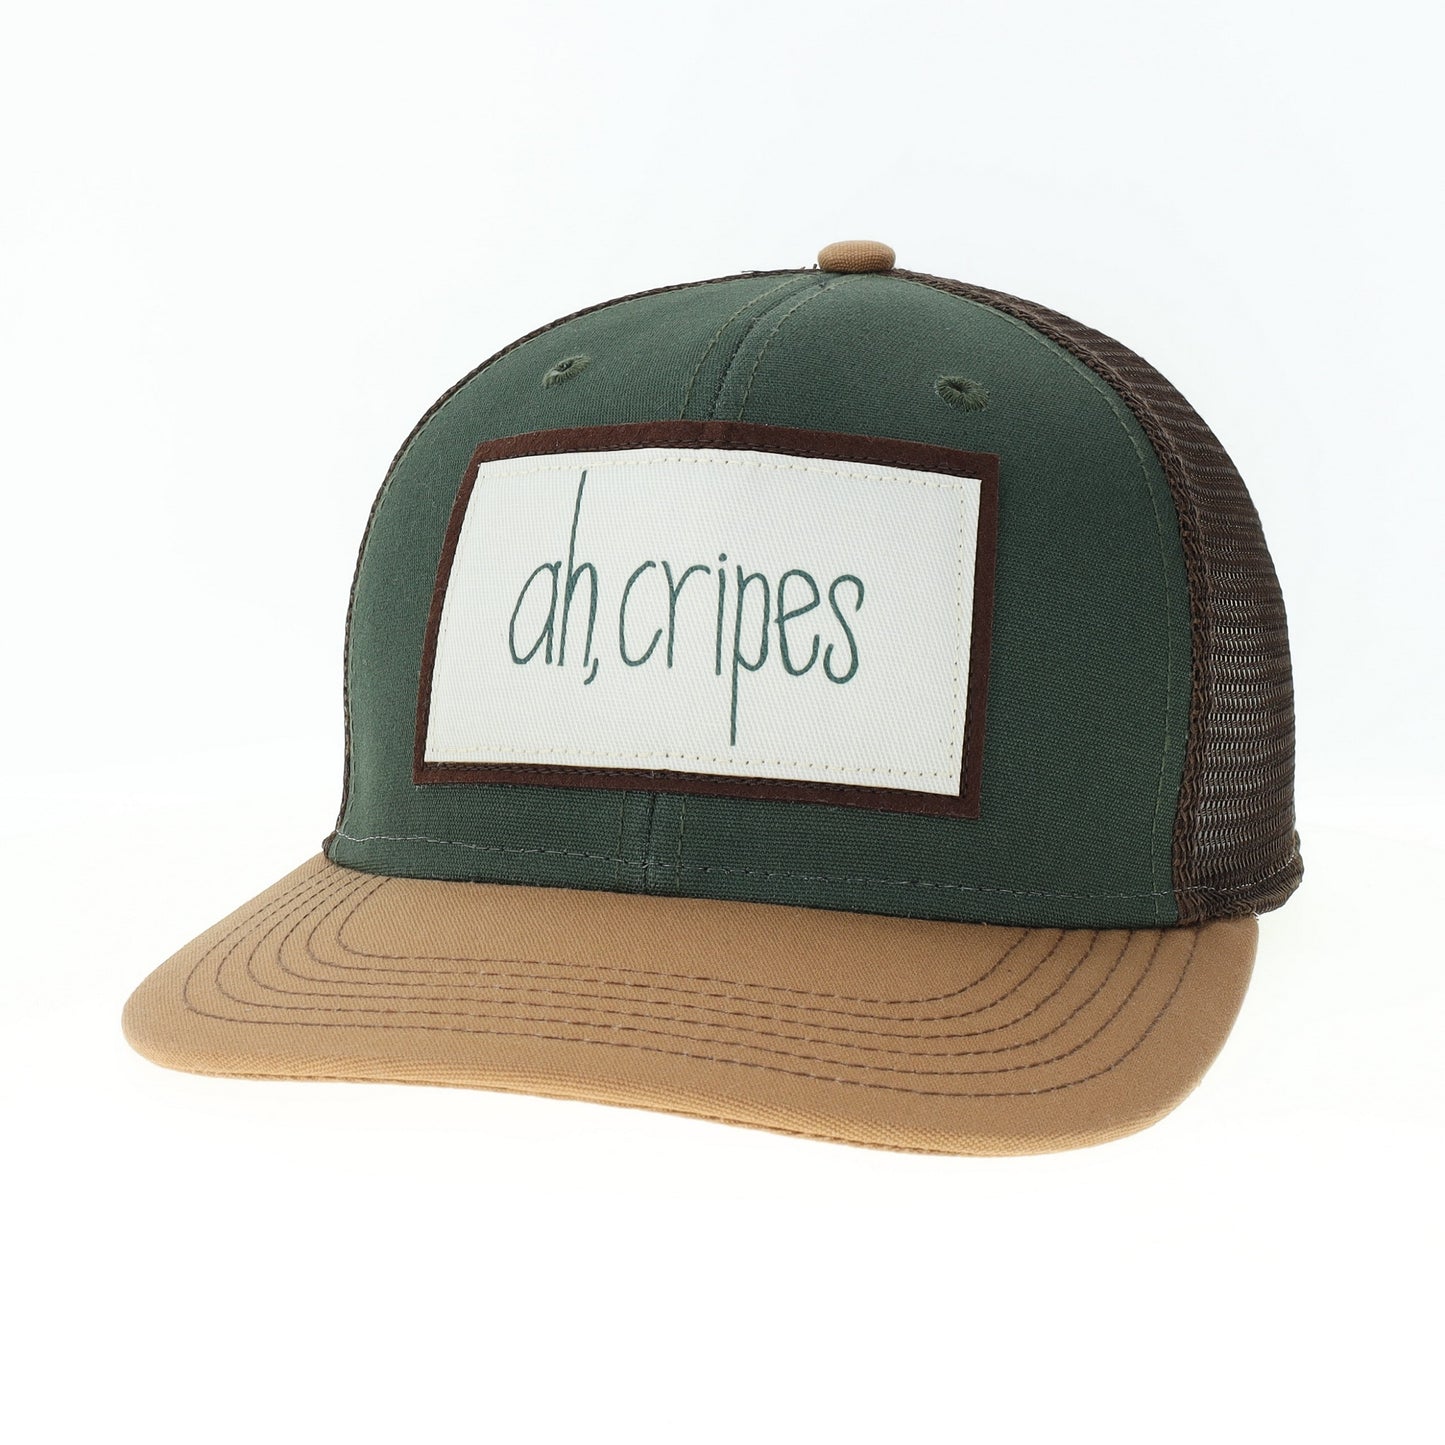 Ah, Cripes Mid-Pro Trucker Hat in Dark Green/Camel/Brown